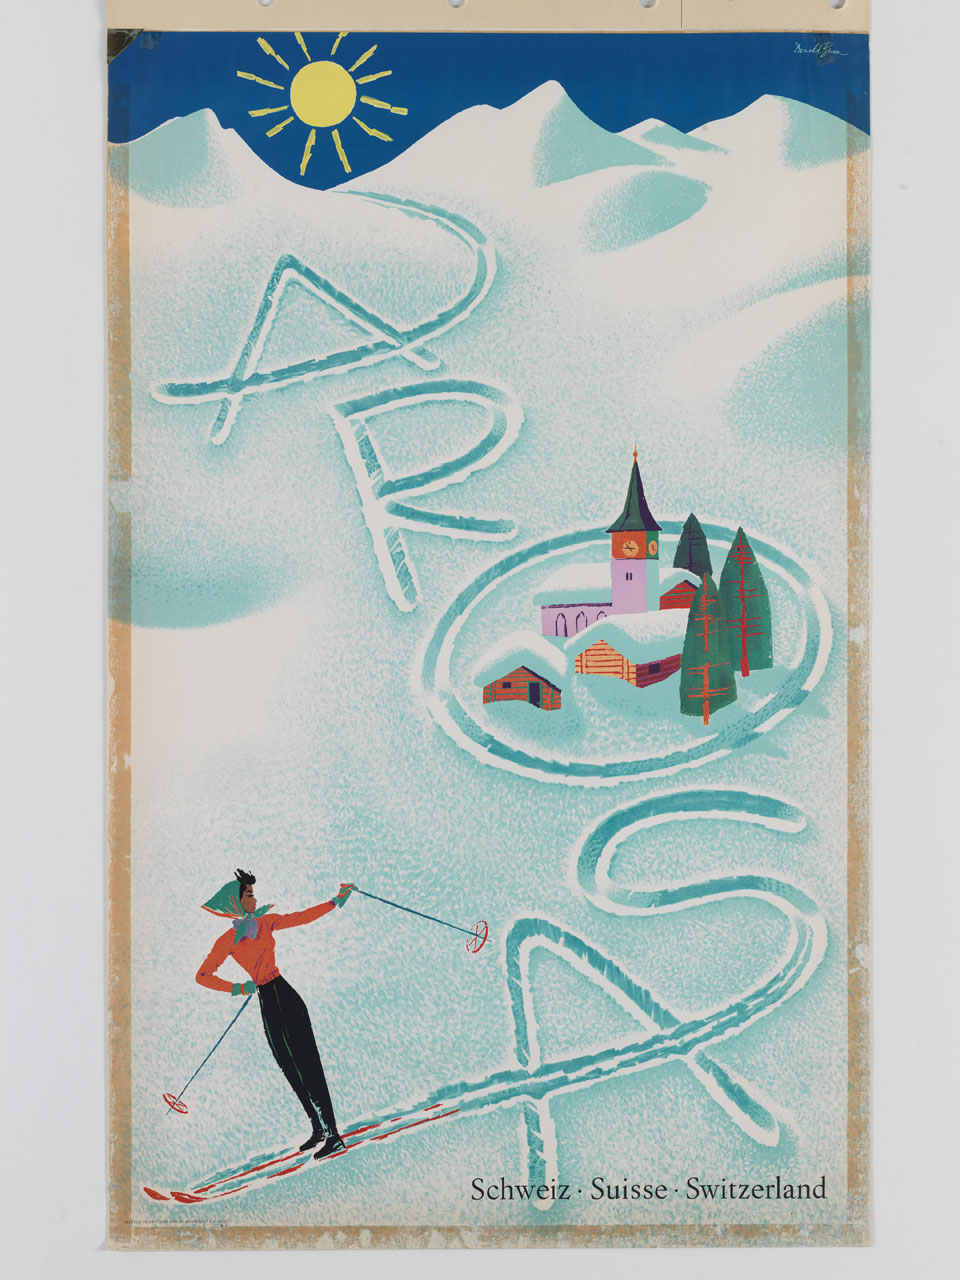 sciatrice imprime sulla neve una scia che disegna la parola Arosa (manifesto) di Binn Donald - ambito svizzero (sec. XX)